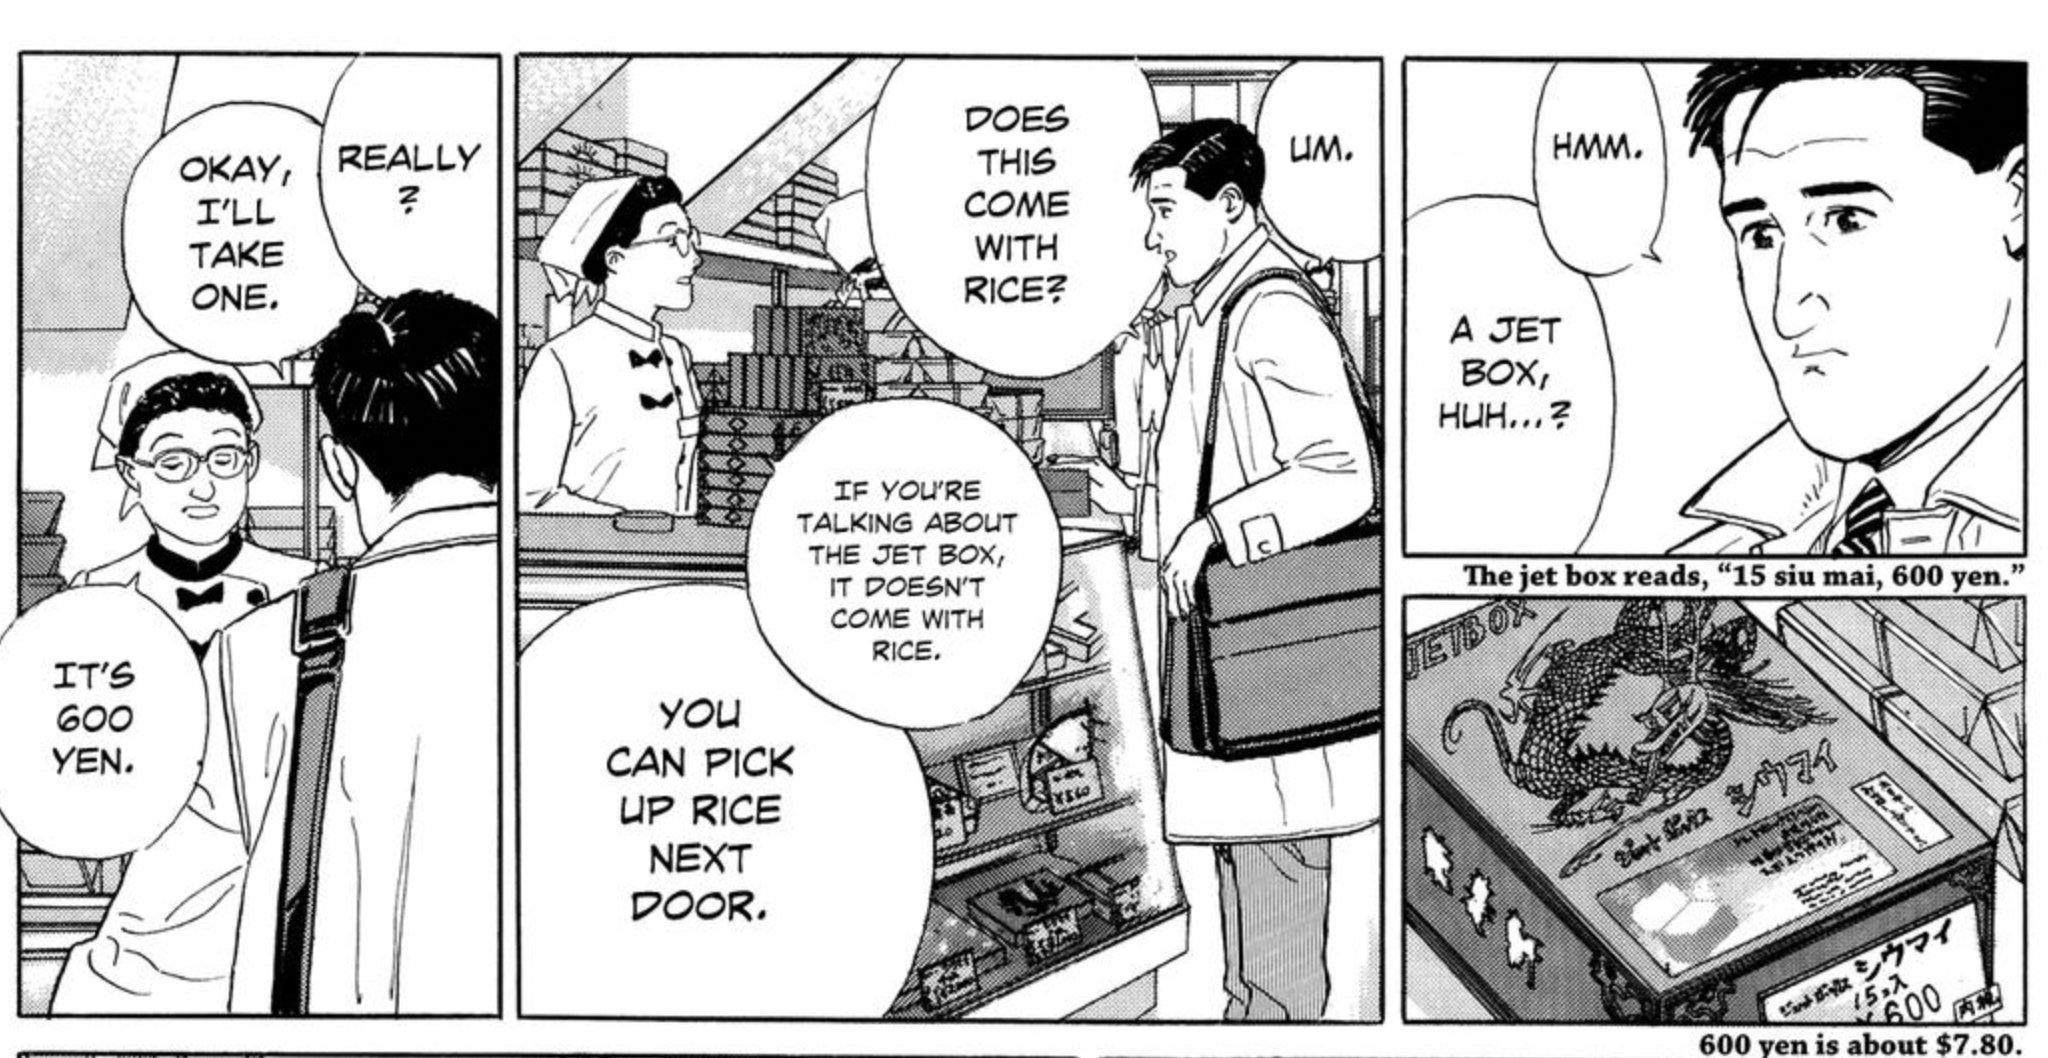 Goro buying an "eki-ben" a meal made especially for Shinkansen train rides.